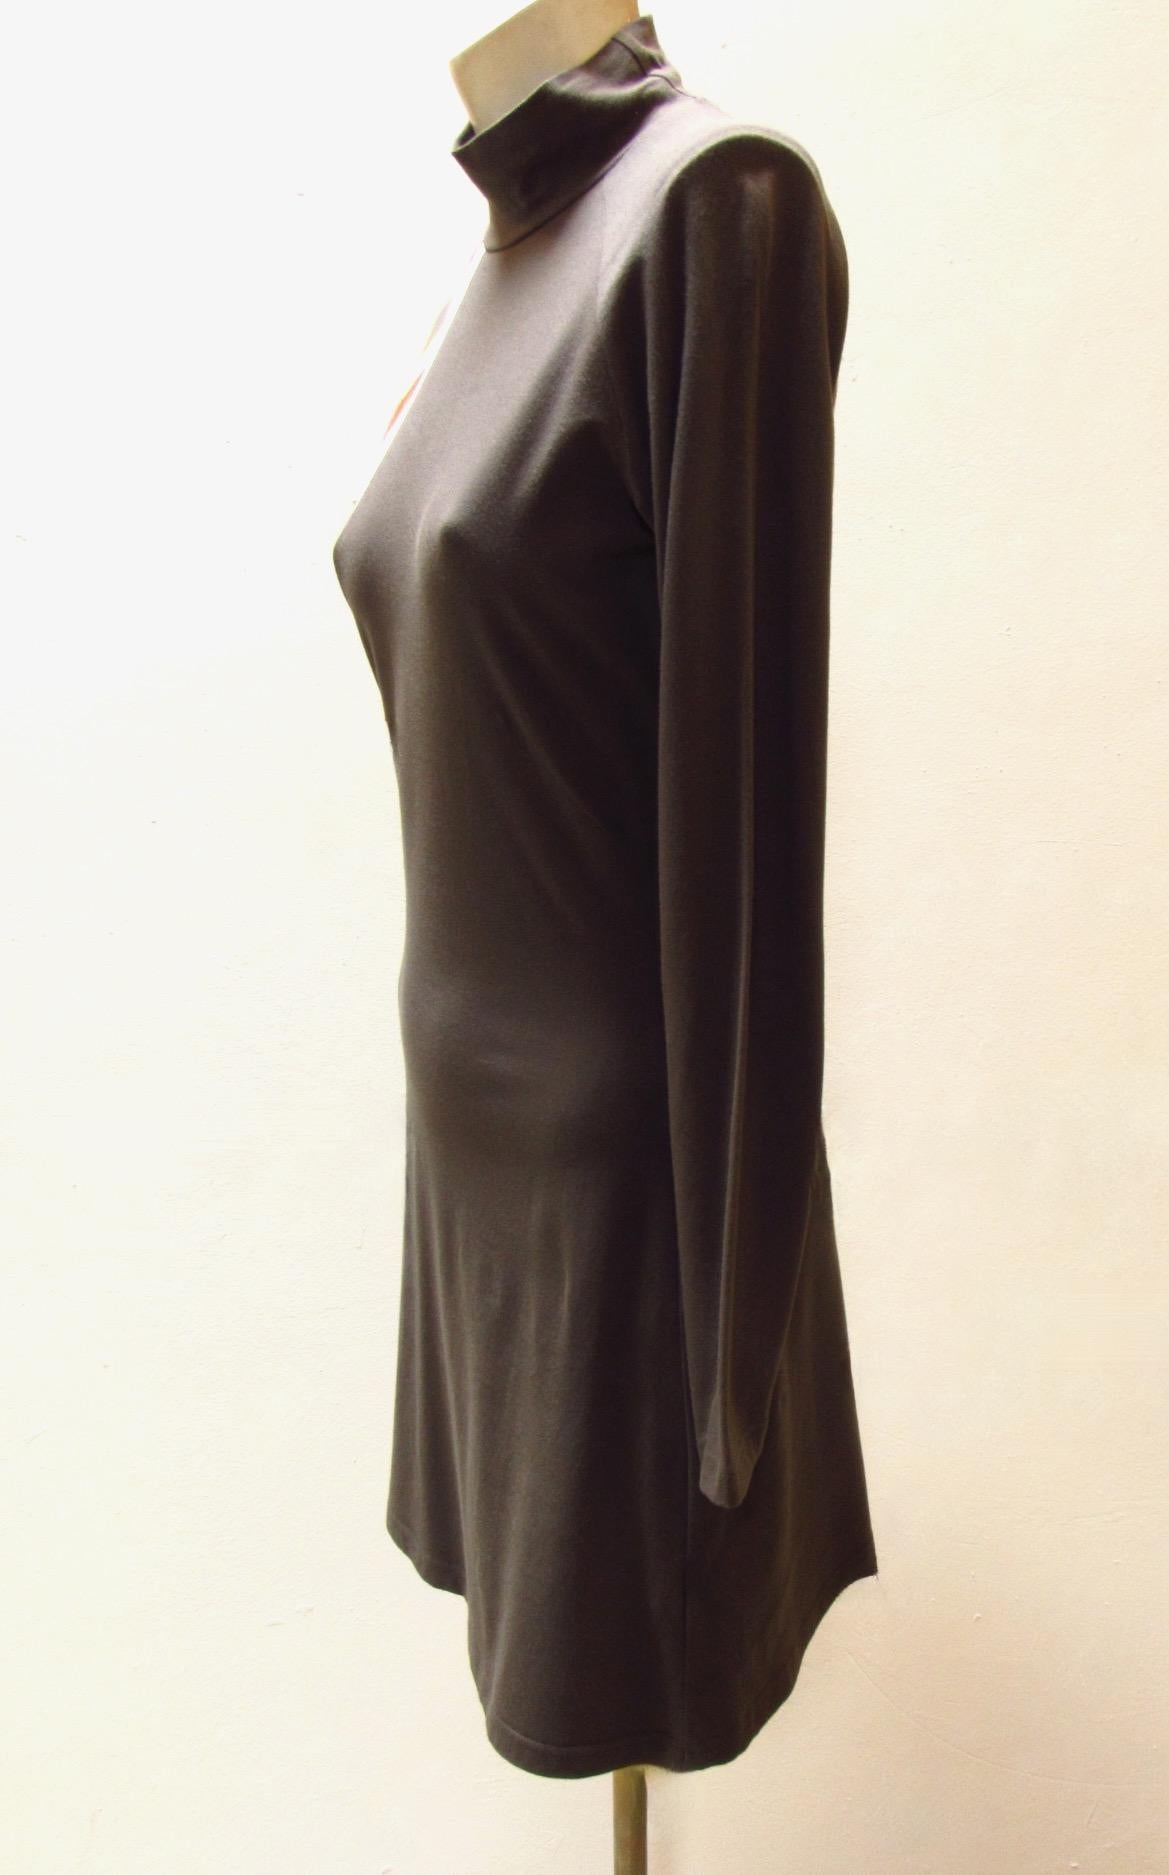 Dieses bezaubernde langärmelige Baumwollkleid mit grauem Rollkragen und hübschen Streifen an einer Schulter ist ein Vintage-Stück von Jean Paul Gaultier. 